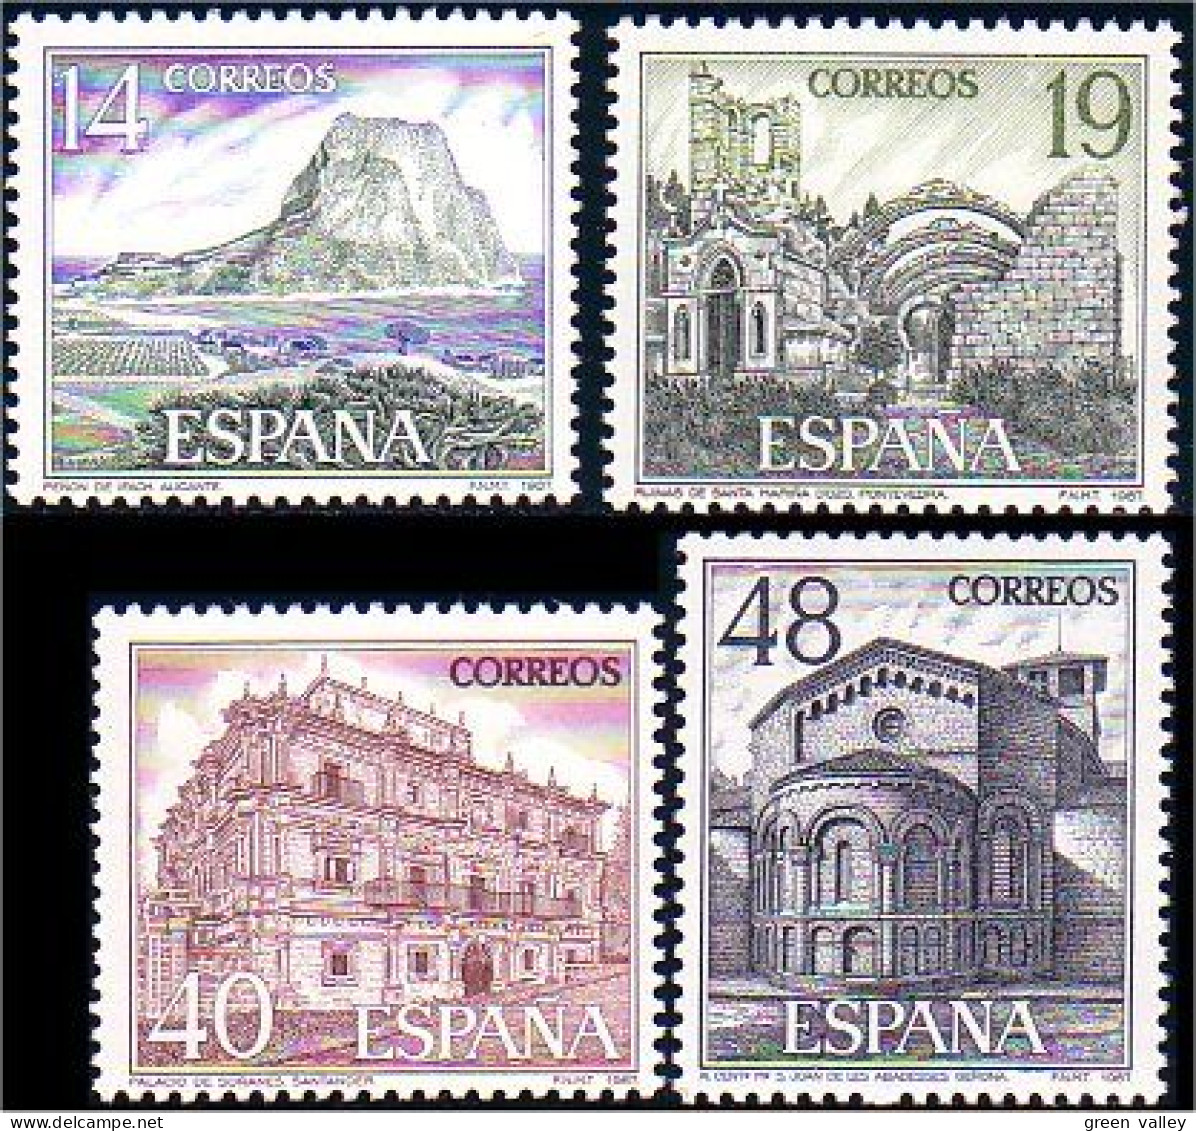 326 Espagne Tourisme 1987 Catle Monastery Church MNH ** Neuf SC (ESP-239) - Abbeys & Monasteries